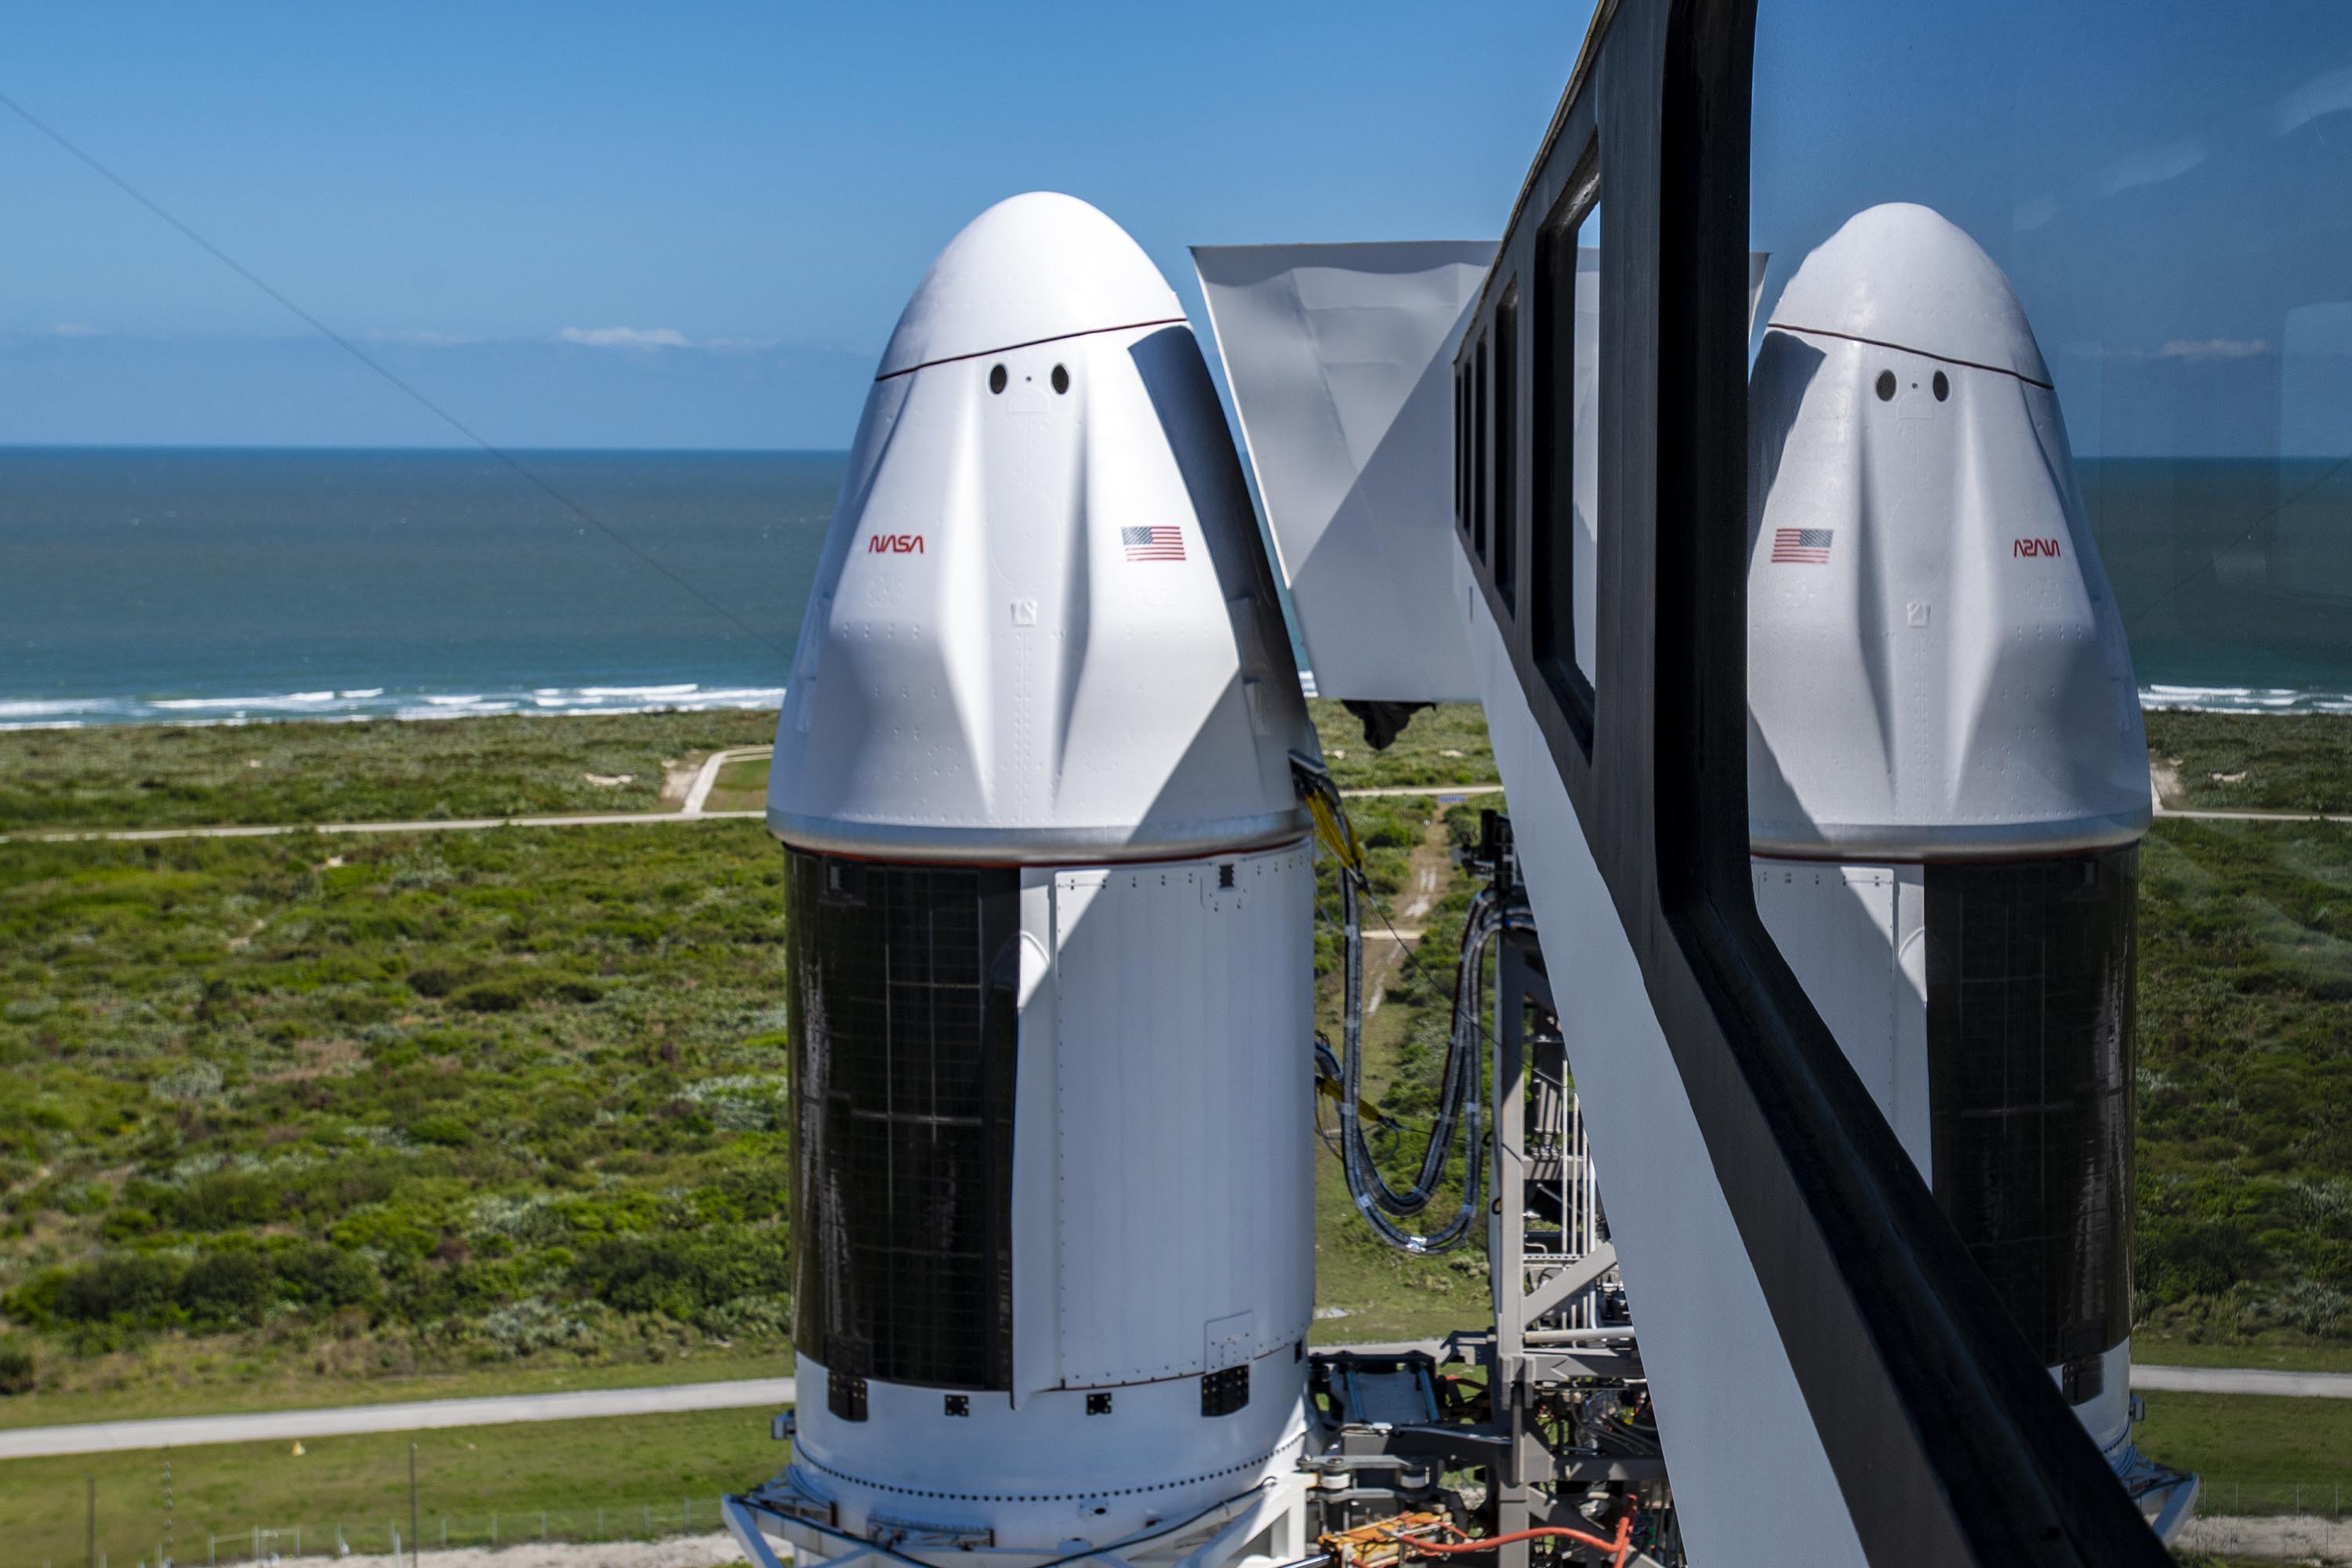 Dragon de SpaceX au slc-40